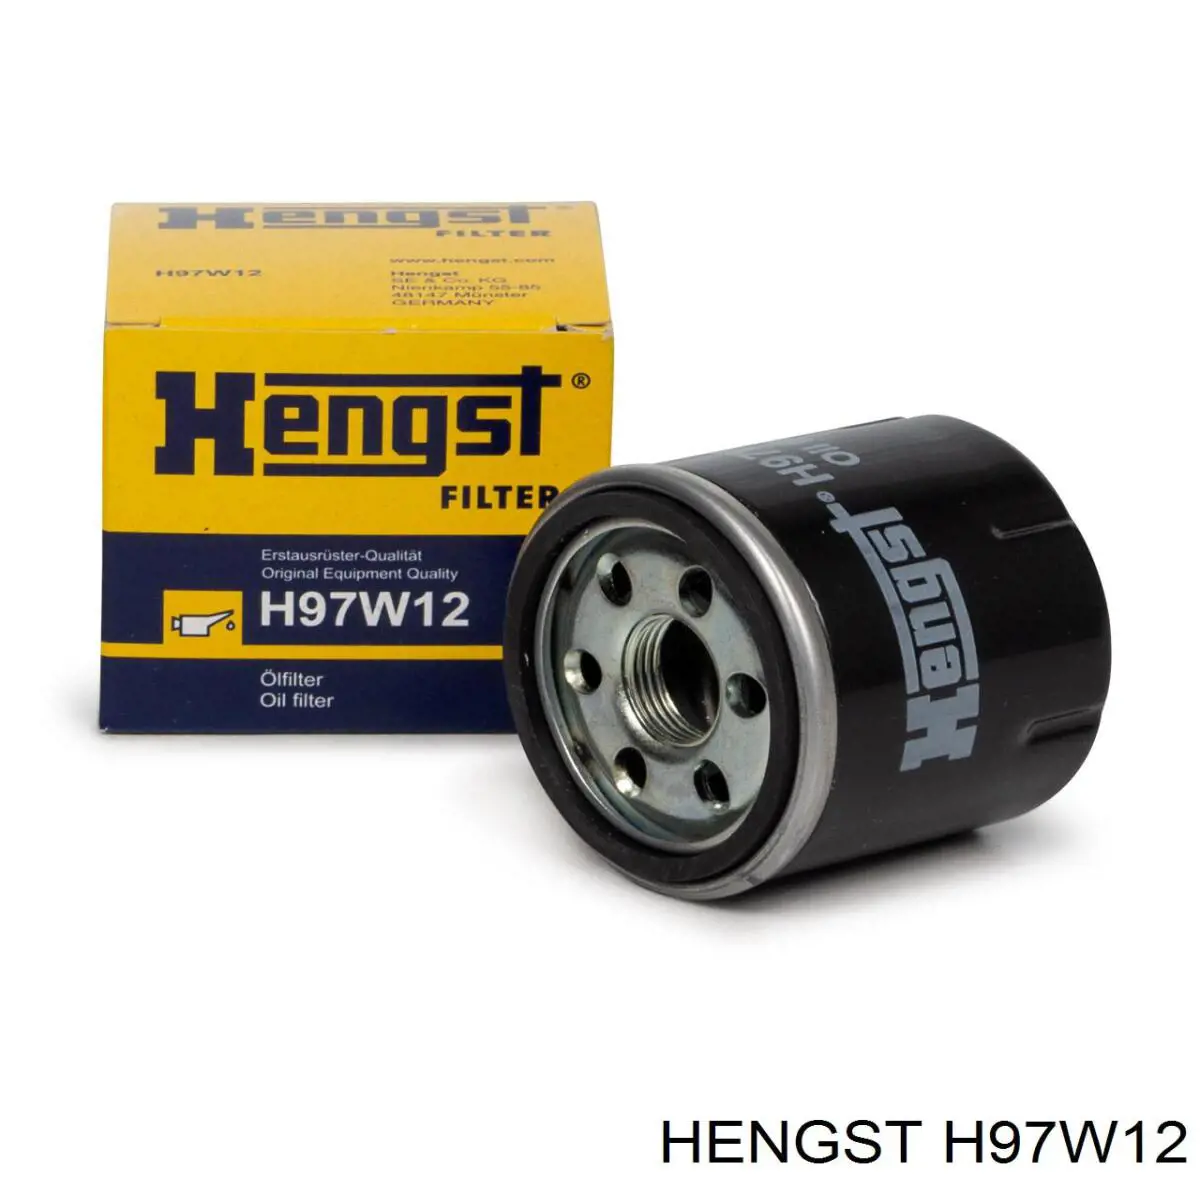 H97W12 Hengst filtro de aceite